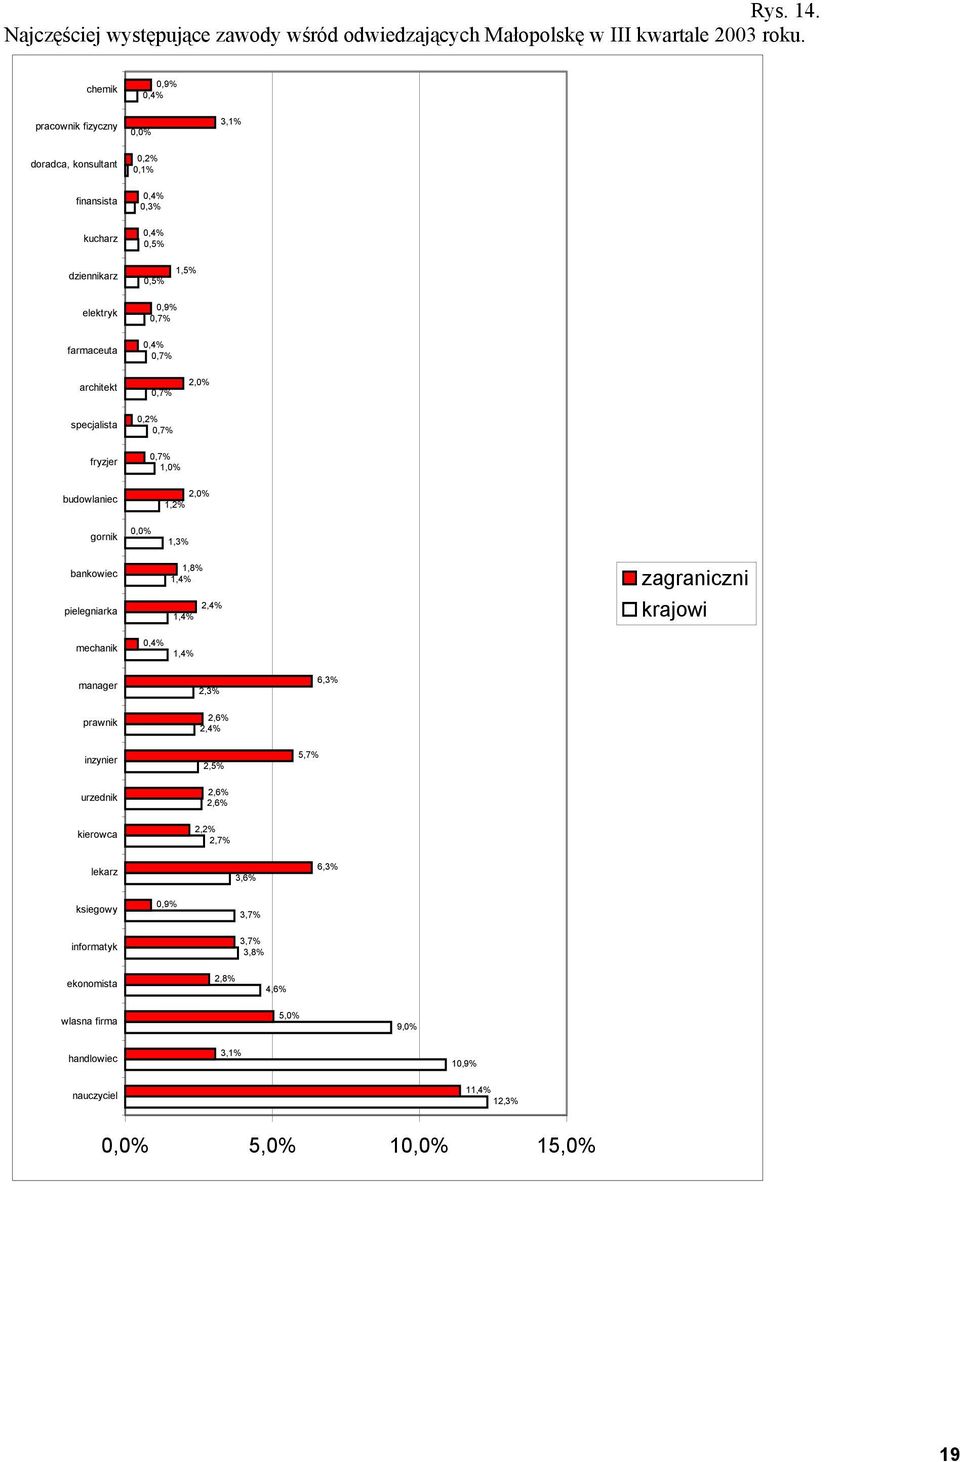 fryzjer 0,9% 0,7% 0,4% 0,7% 0,7% 0,2% 0,7% 0,7% 1,0% 2,0% budowlaniec gornik 0,0% 2,0% 1,2% 1,3% bankowiec pielegniarka 1,8% 1,4% 2,4% 1,4% zagraniczni krajowi mechanik 0,4% 1,4%